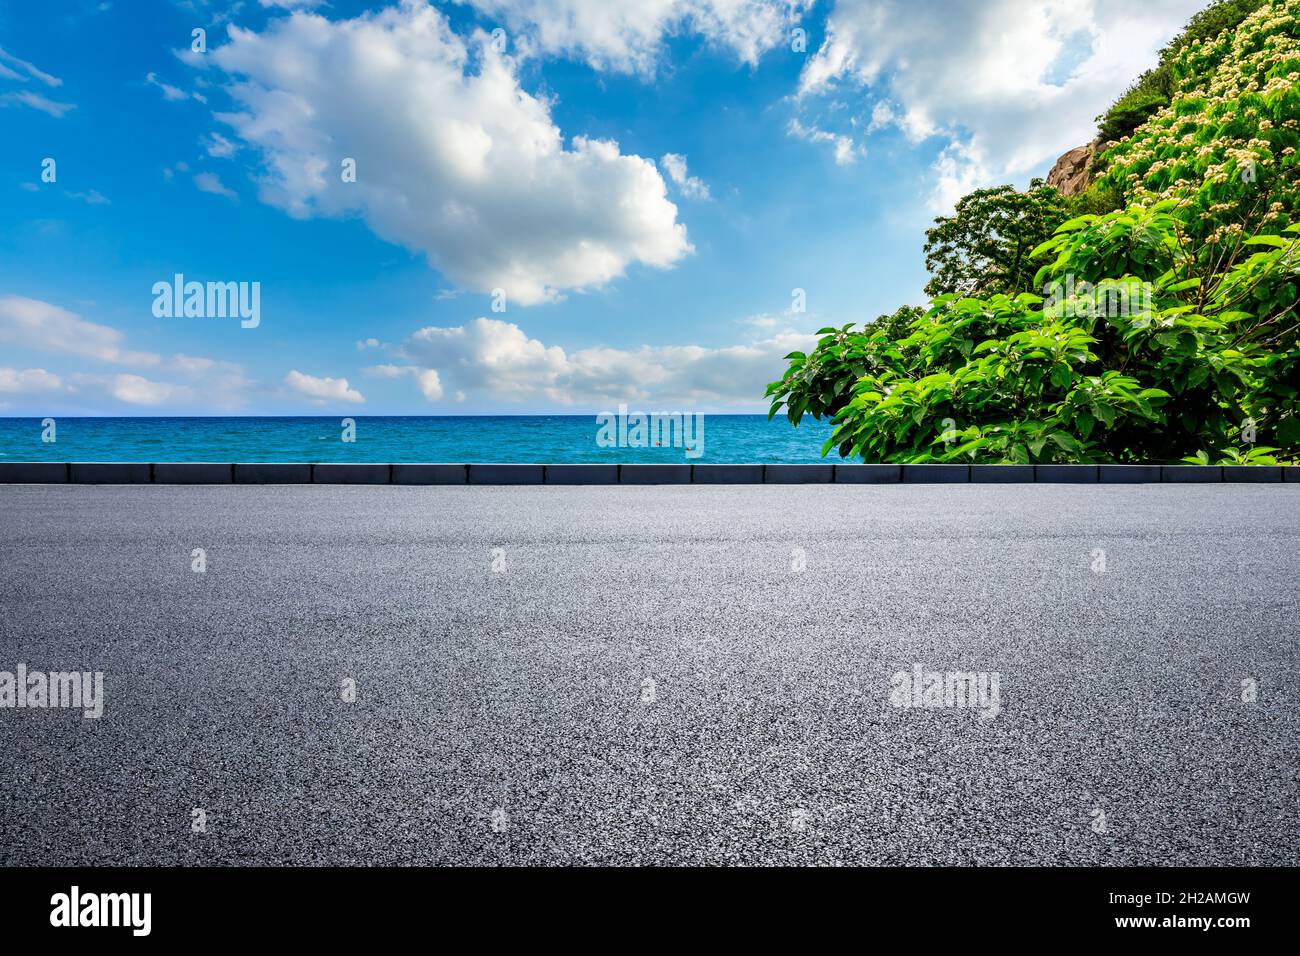 Asfalto carretera y montaña con paisaje natural de mar azul. Foto de stock